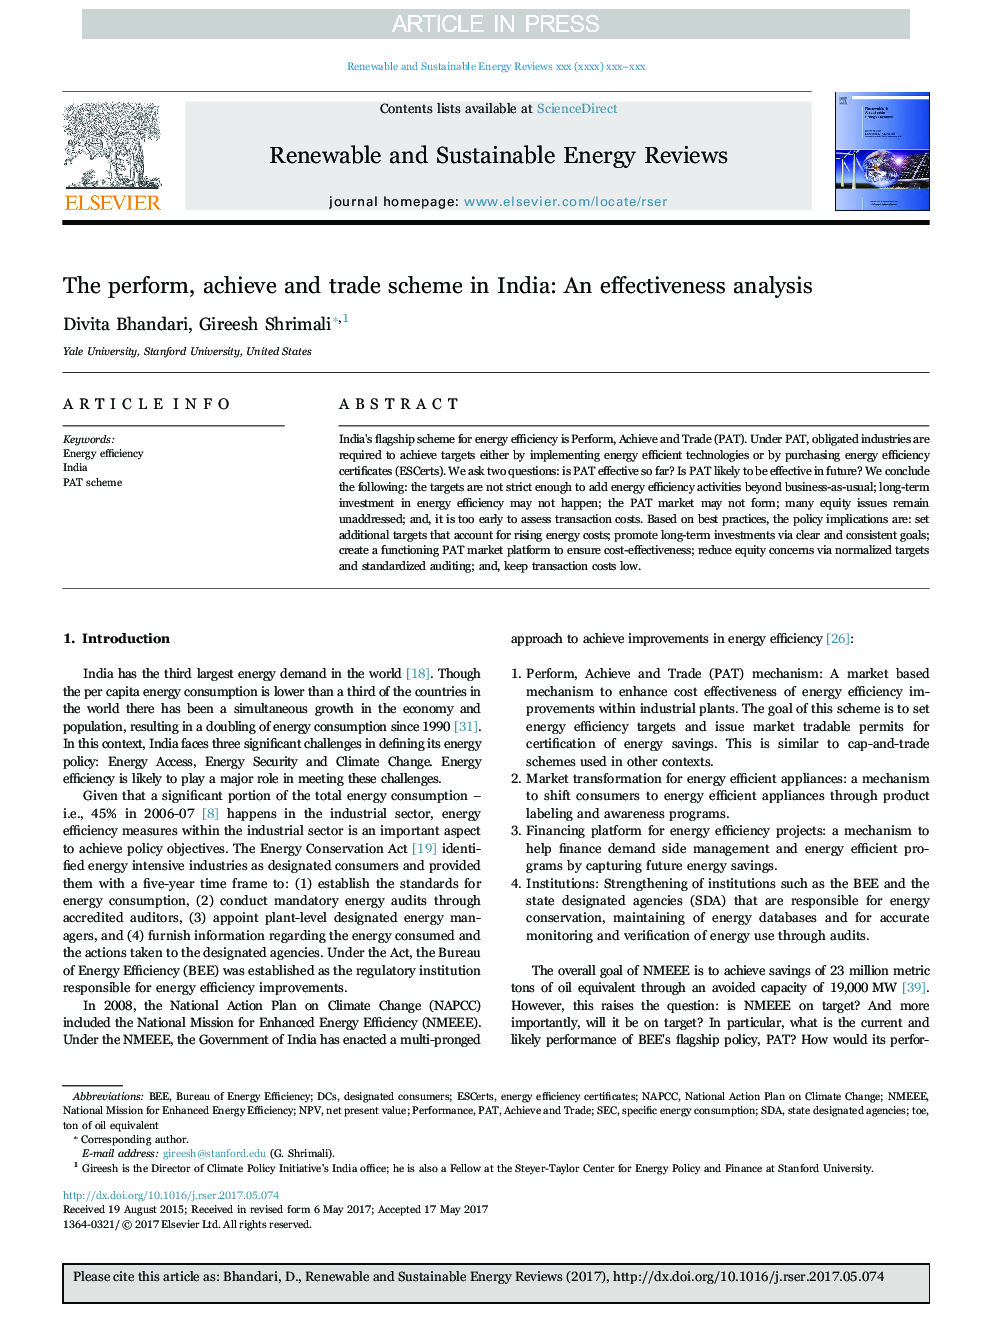 طرح انجام، دستیابی و تجارت در هند: تجزیه و تحلیل اثربخشی